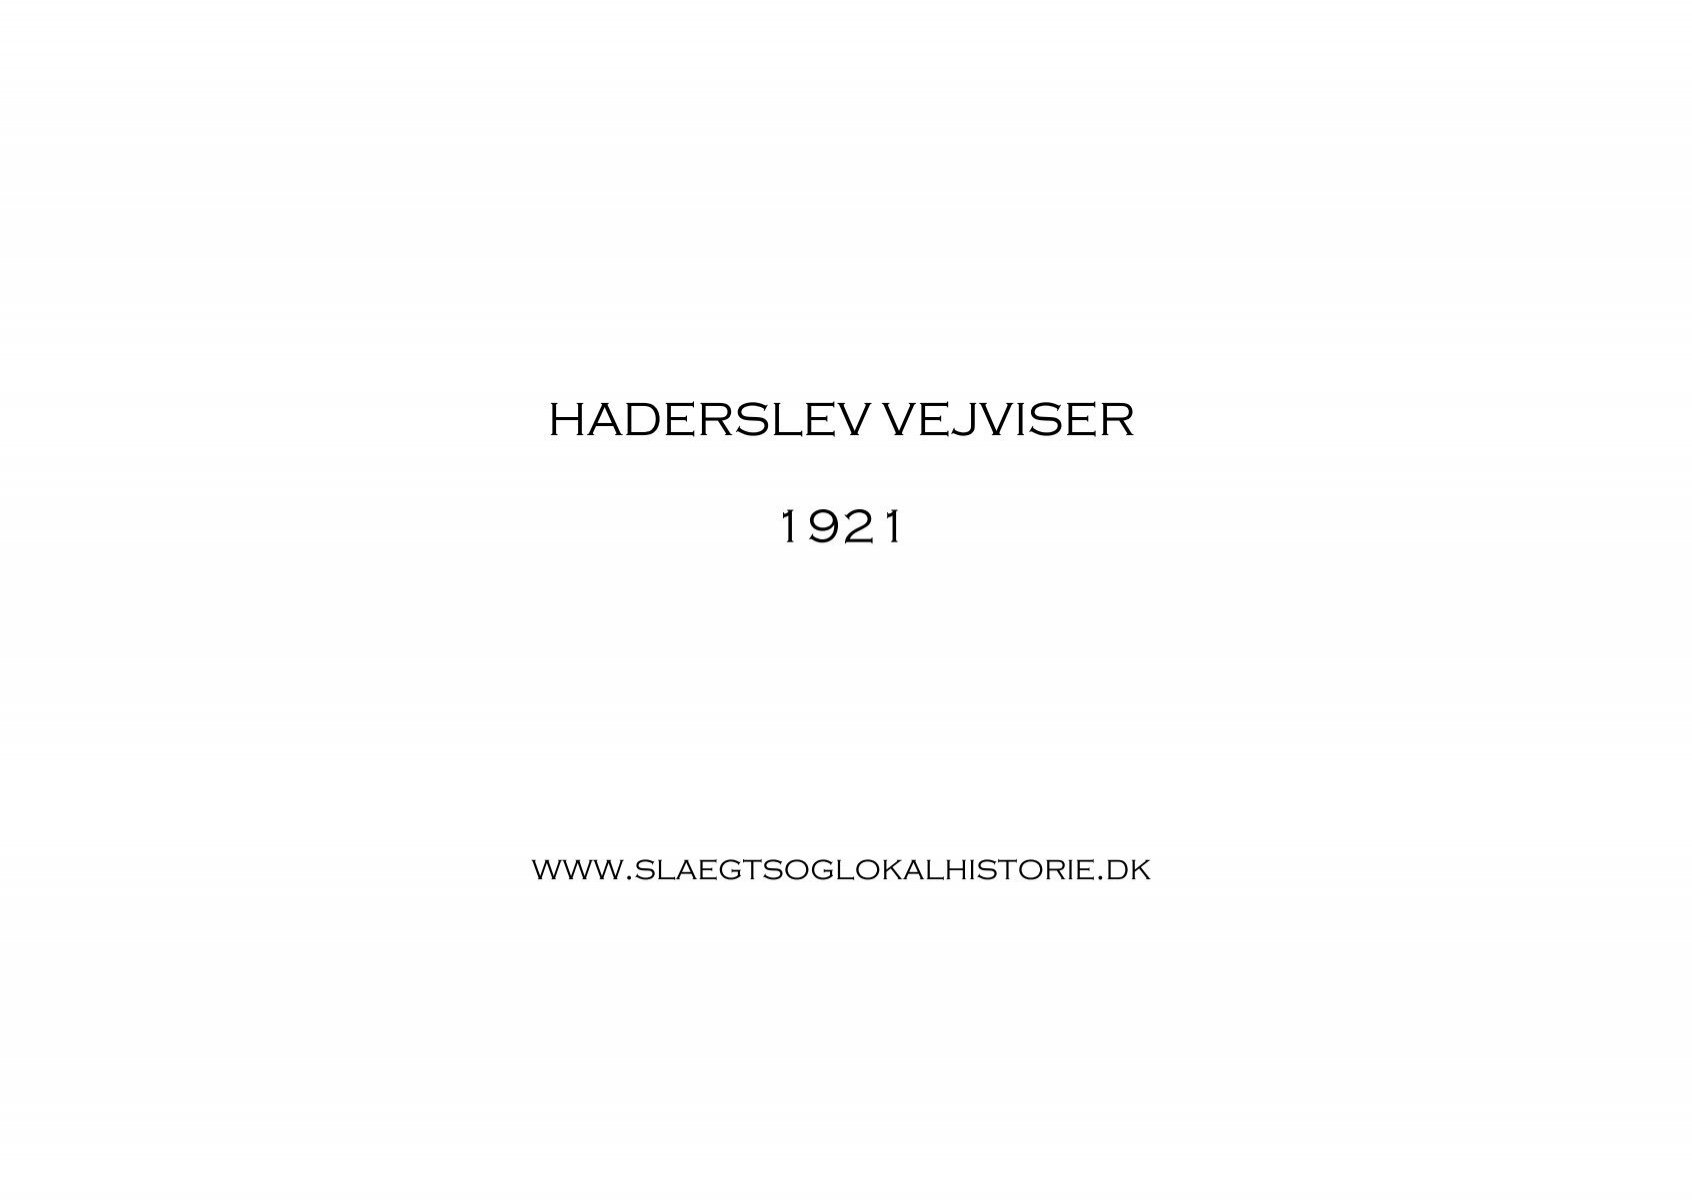 Afskedige Børnehave Secréte Haderslev Vejviser 1921 [PDF] ca. 52 Mbyte